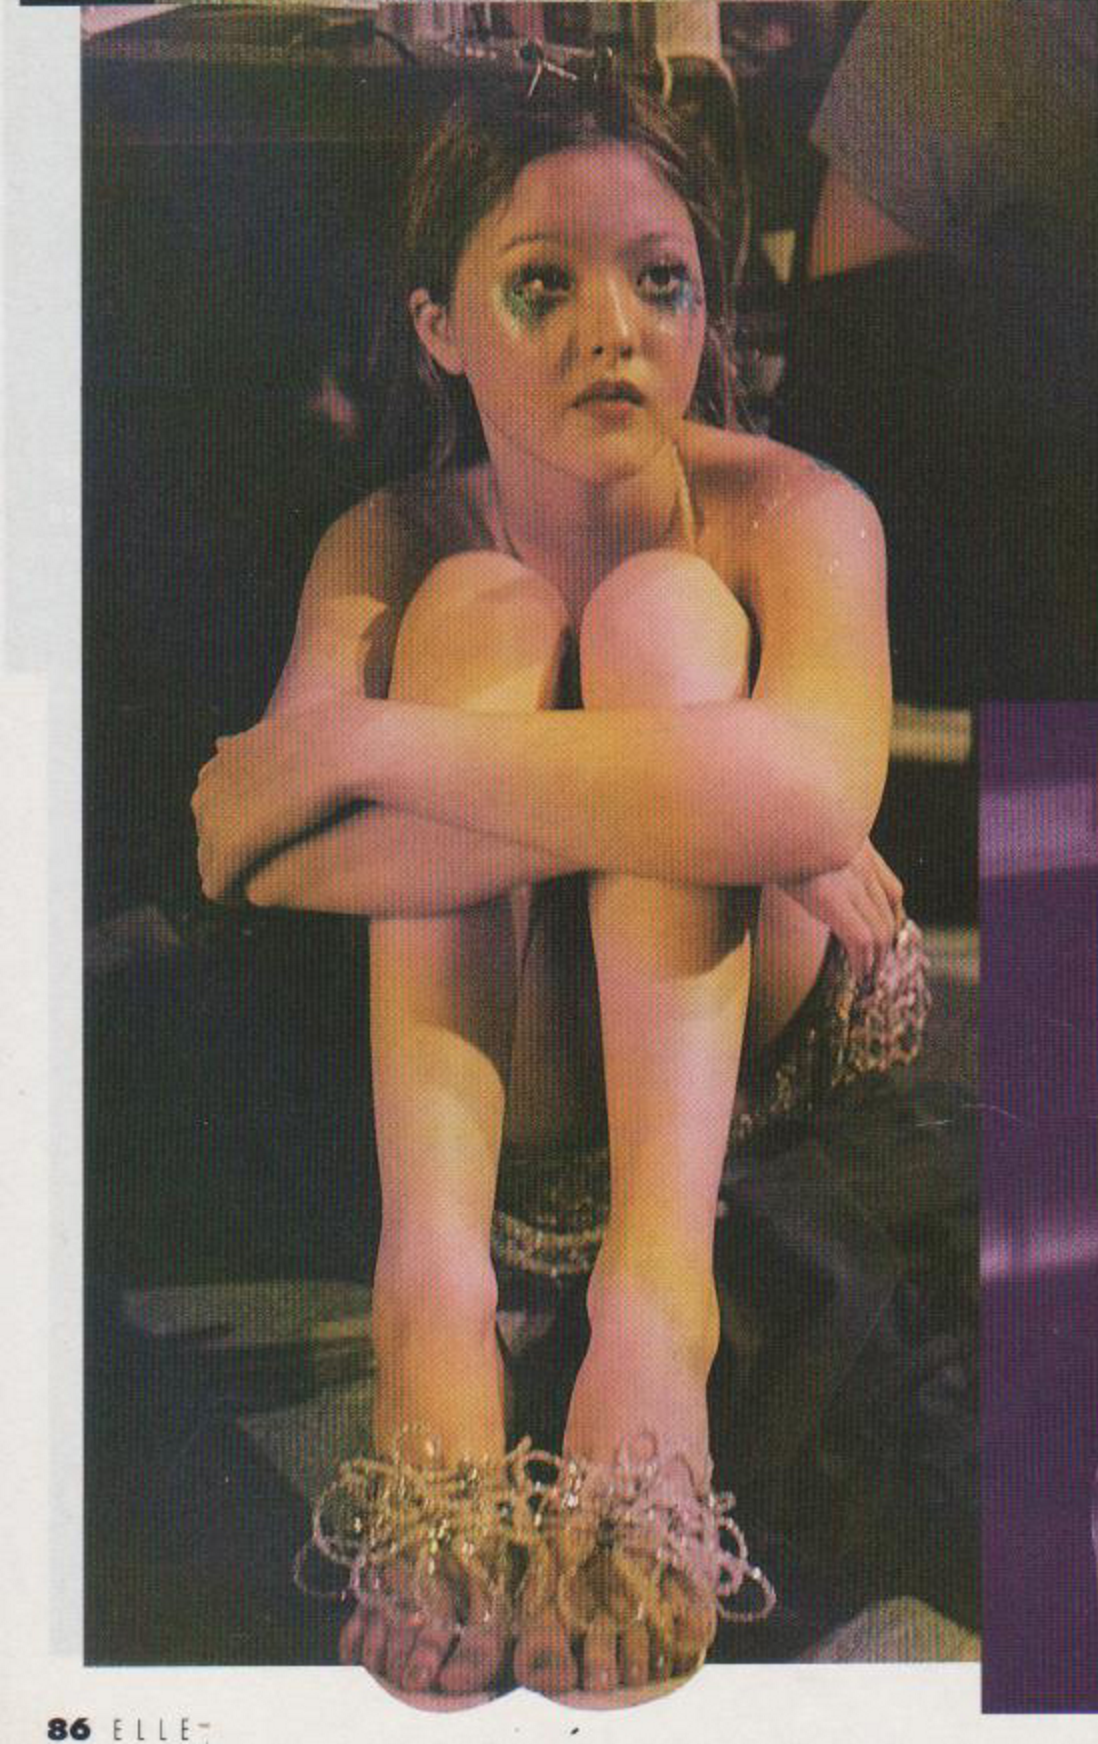 devon-aoki:Devon Aoki backstage at Lainey Keogh S/S 1998